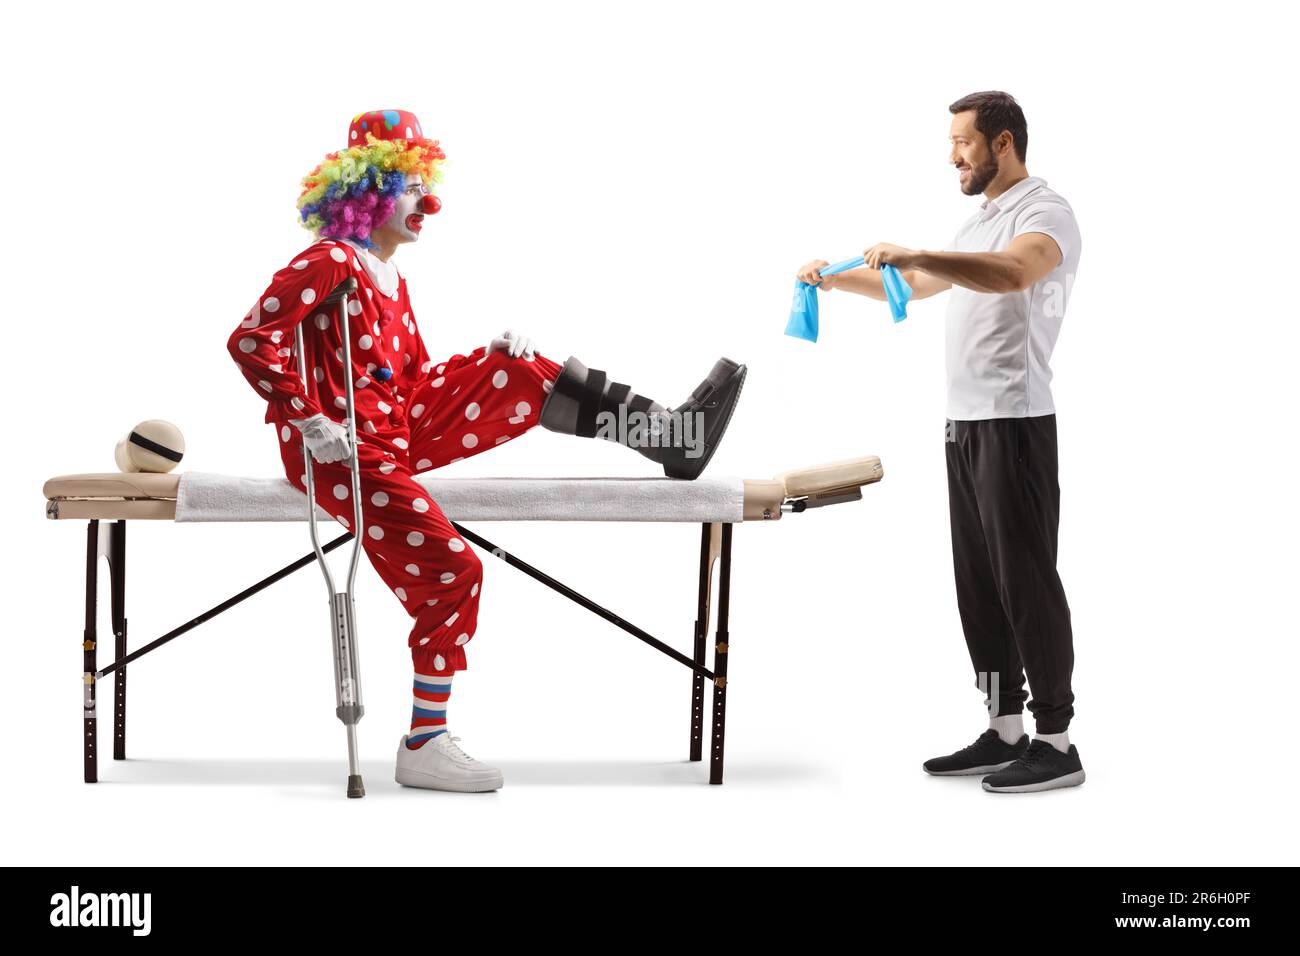 Physiothérapeute montrant l'exercice à un clown avec une jambe blessée isolée sur fond blanc Banque D'Images